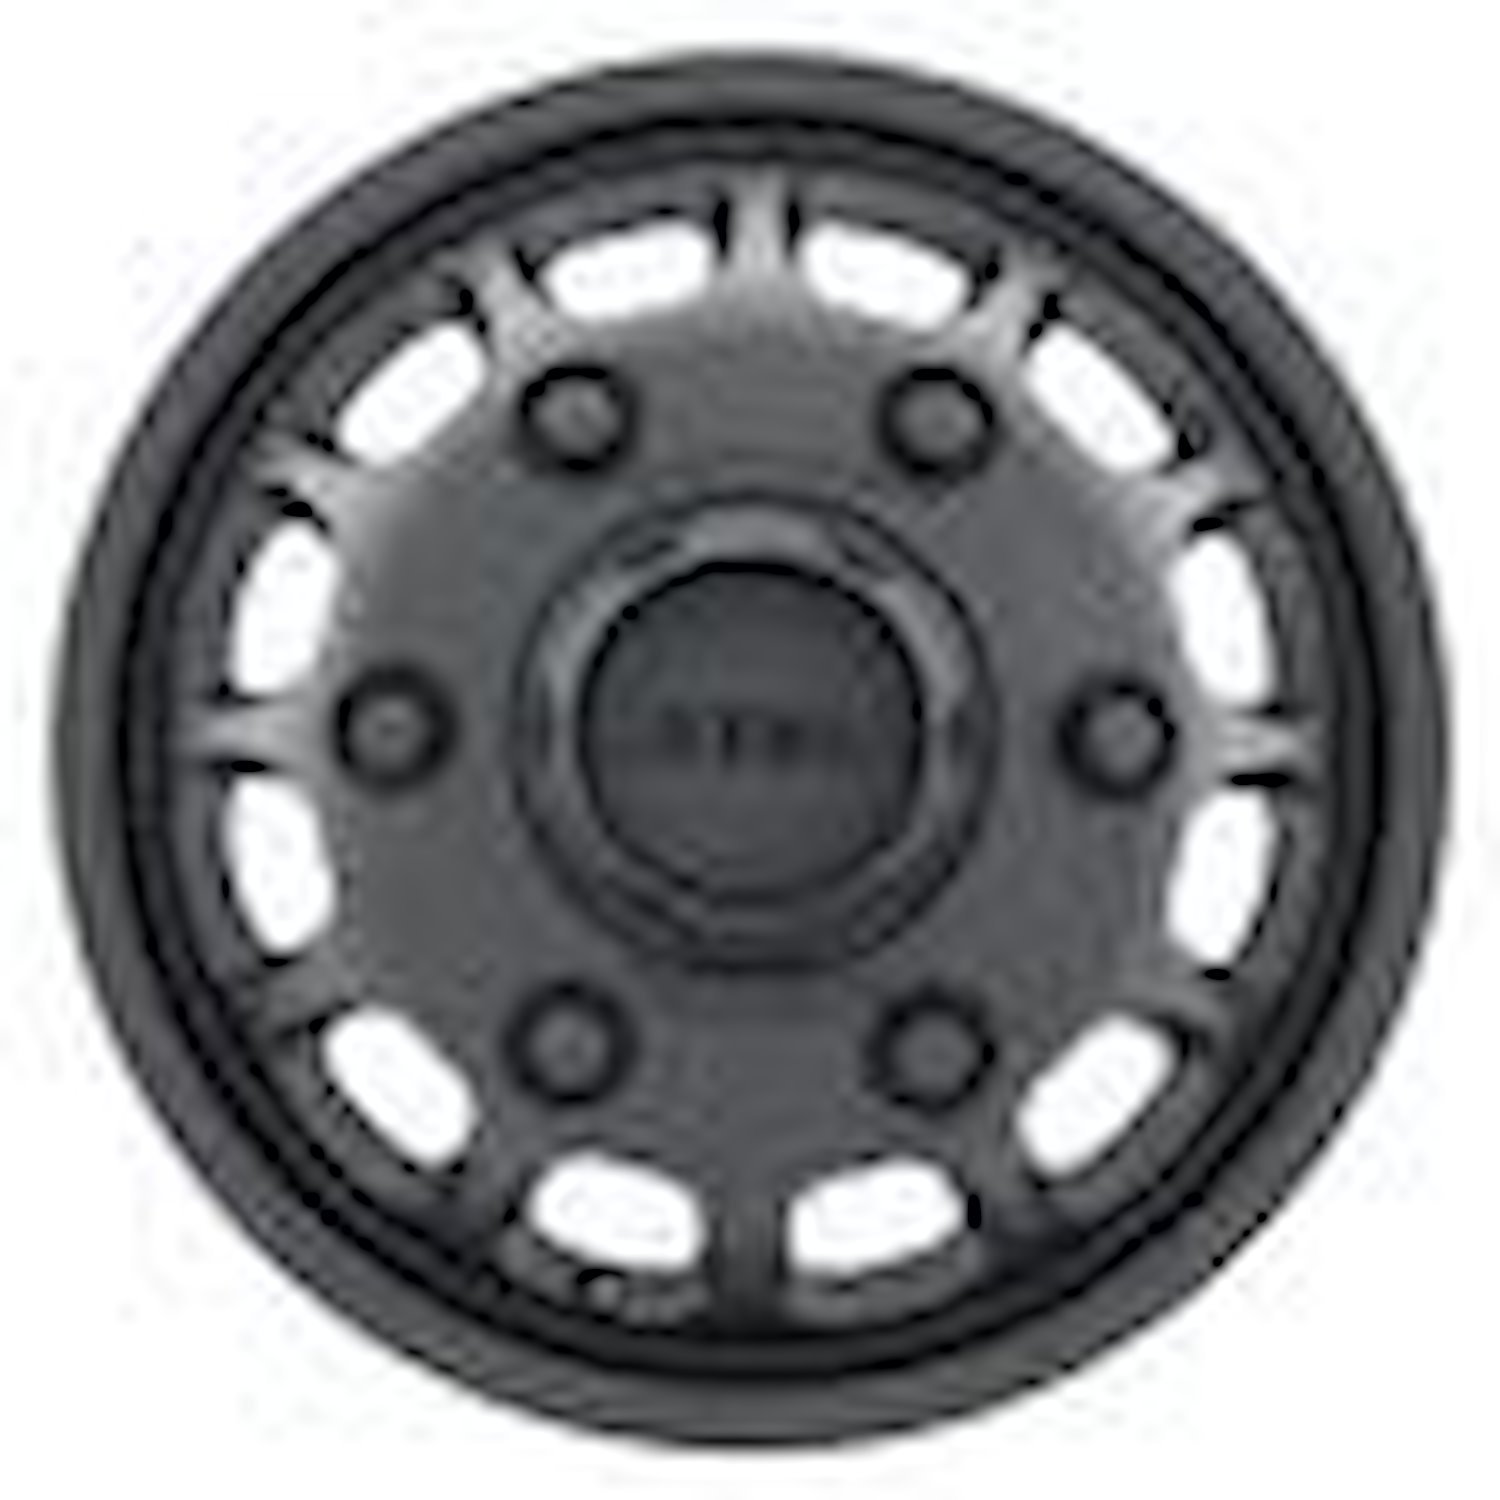 MR901655925117 DUALLY MR901 - FRONT Wheel [Size: 16" x 5.5"] Matte Black